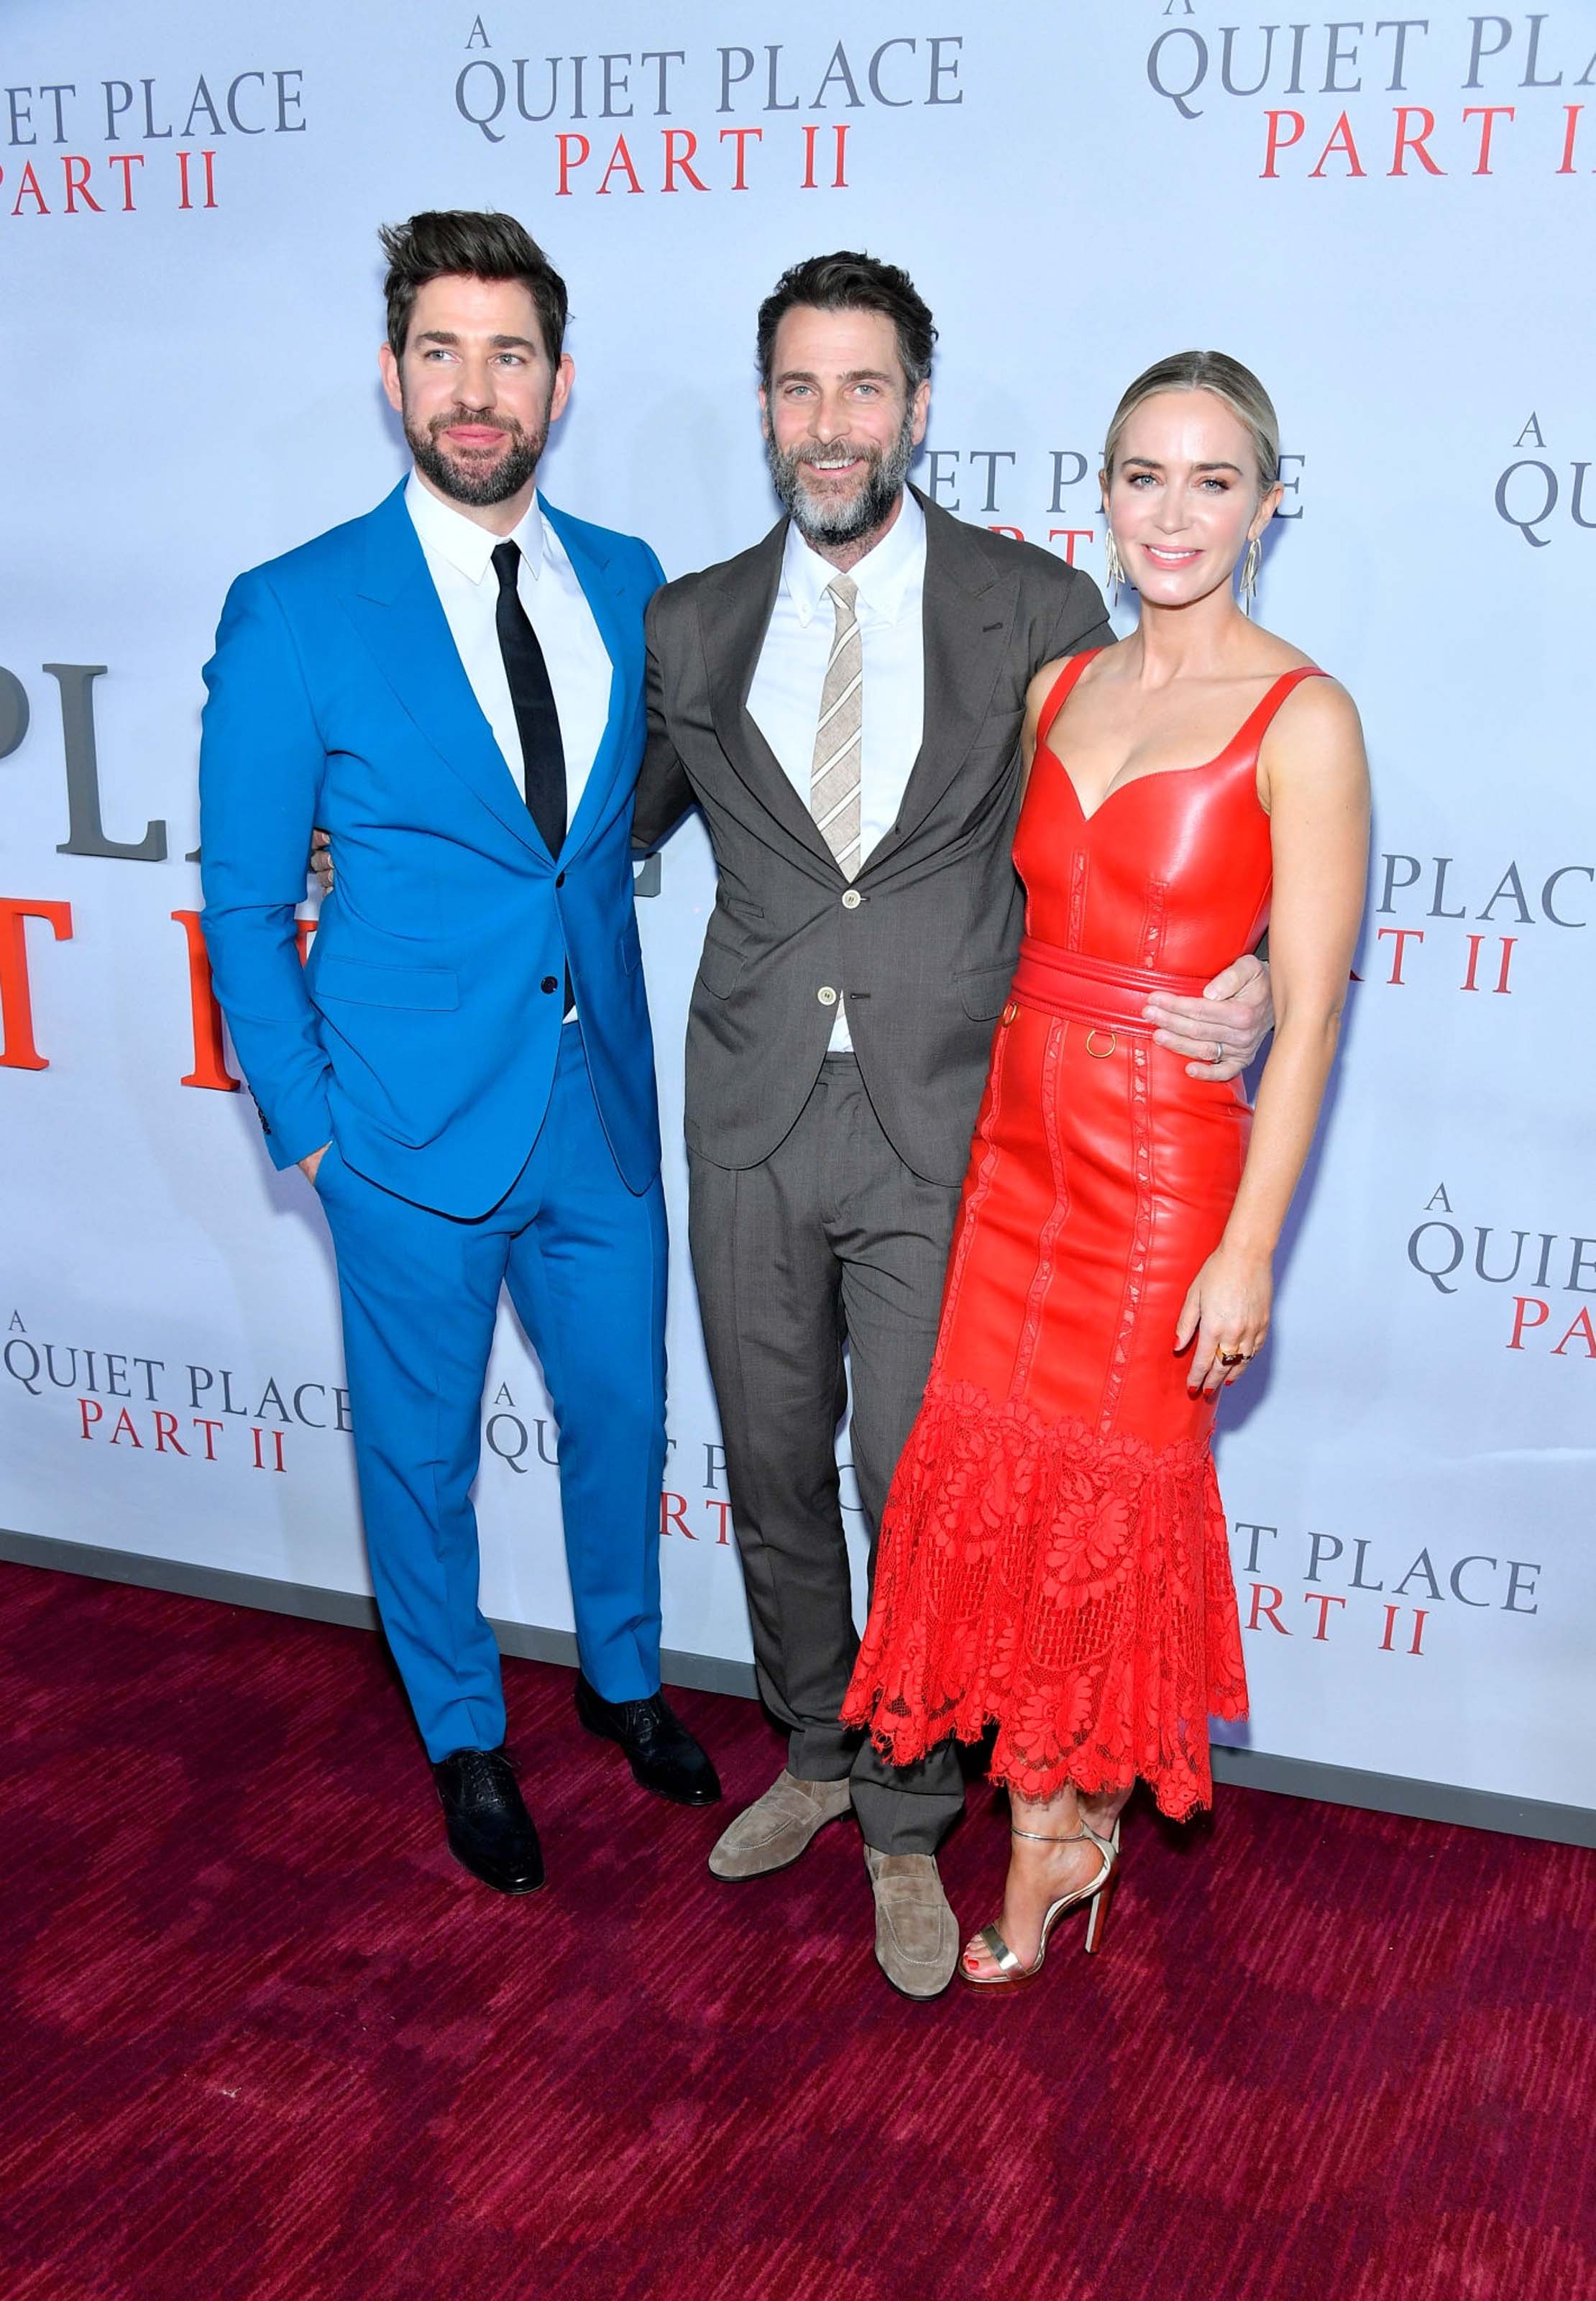 Emily Blunt attends A Quiet Place Part II premiere